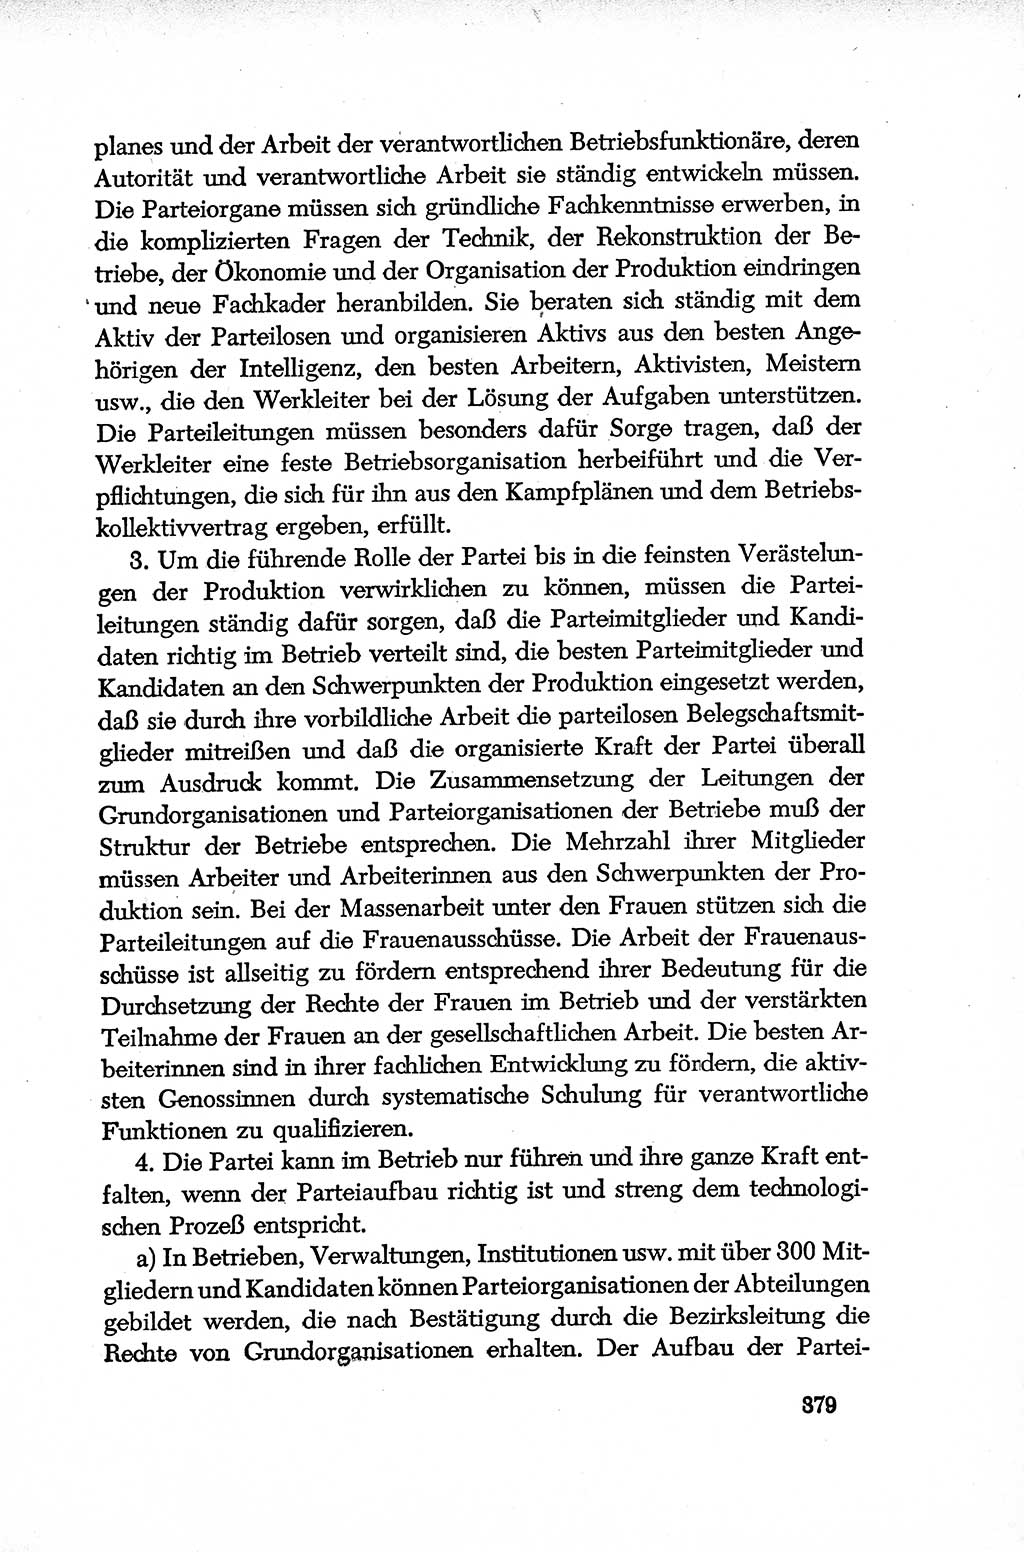 Dokumente der Sozialistischen Einheitspartei Deutschlands (SED) [Deutsche Demokratische Republik (DDR)] 1952-1953, Seite 379 (Dok. SED DDR 1952-1953, S. 379)